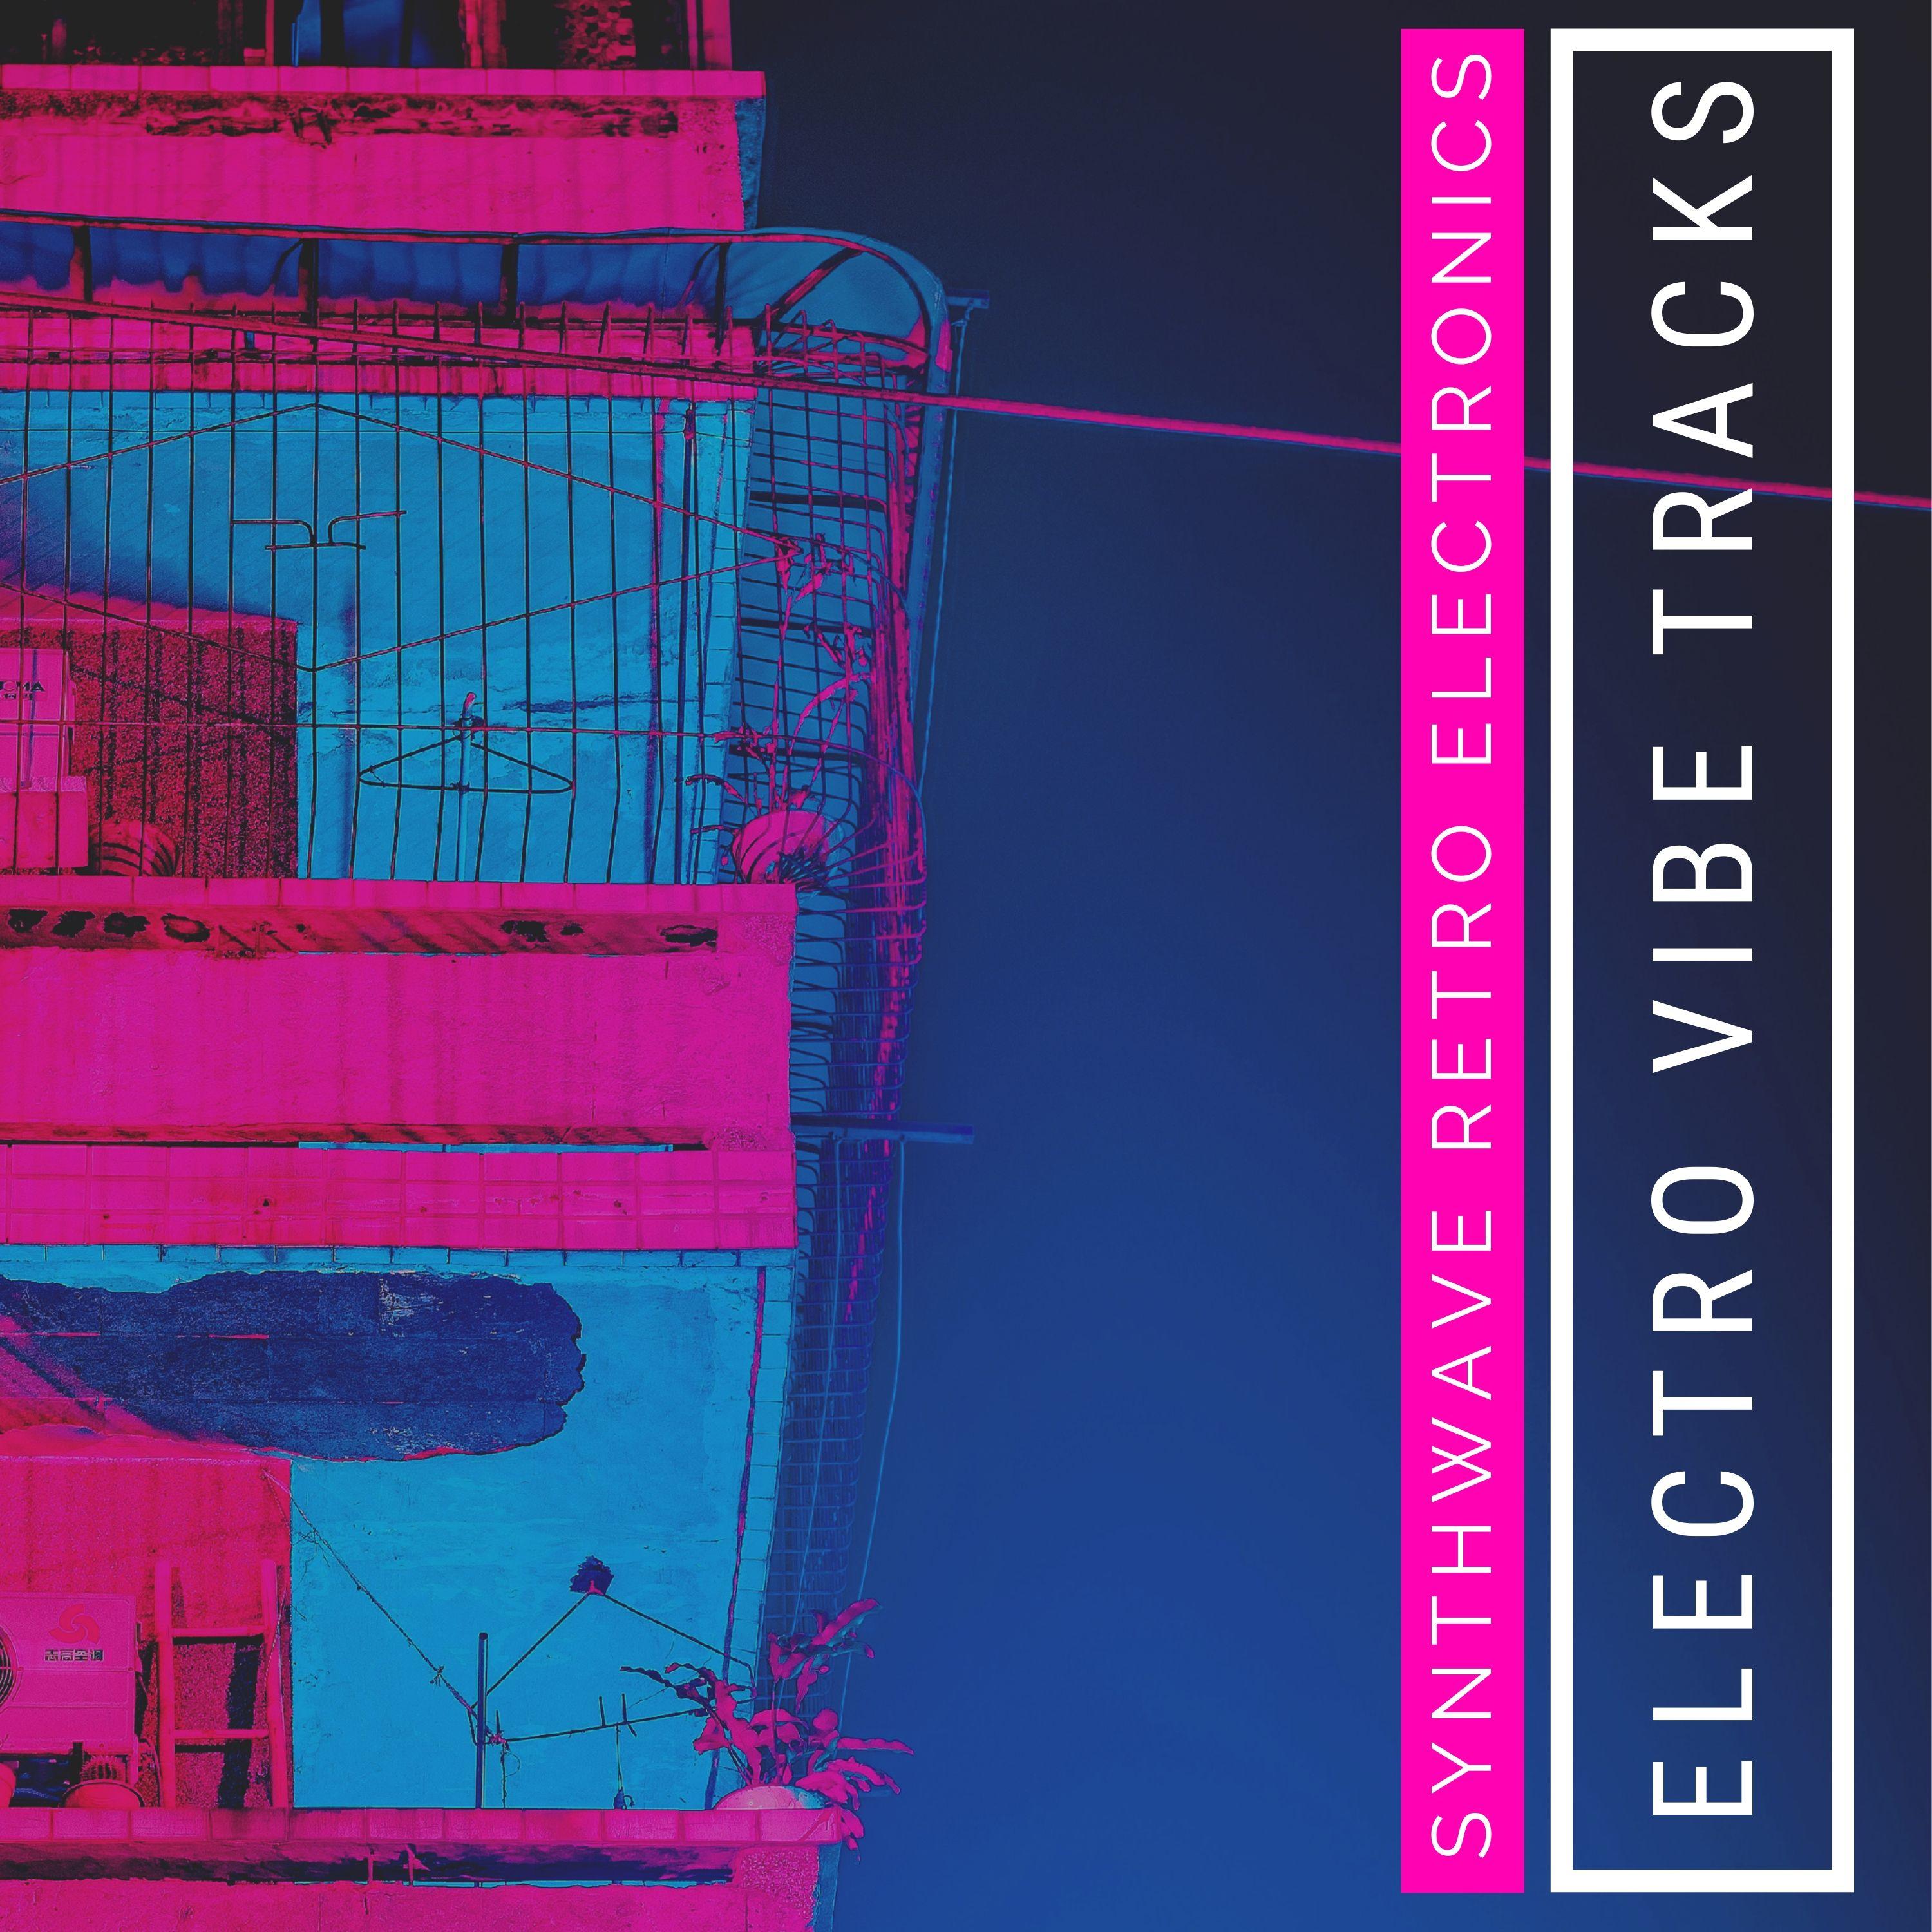 Electro Vibe Tracks - Synthwave Retro Electronics